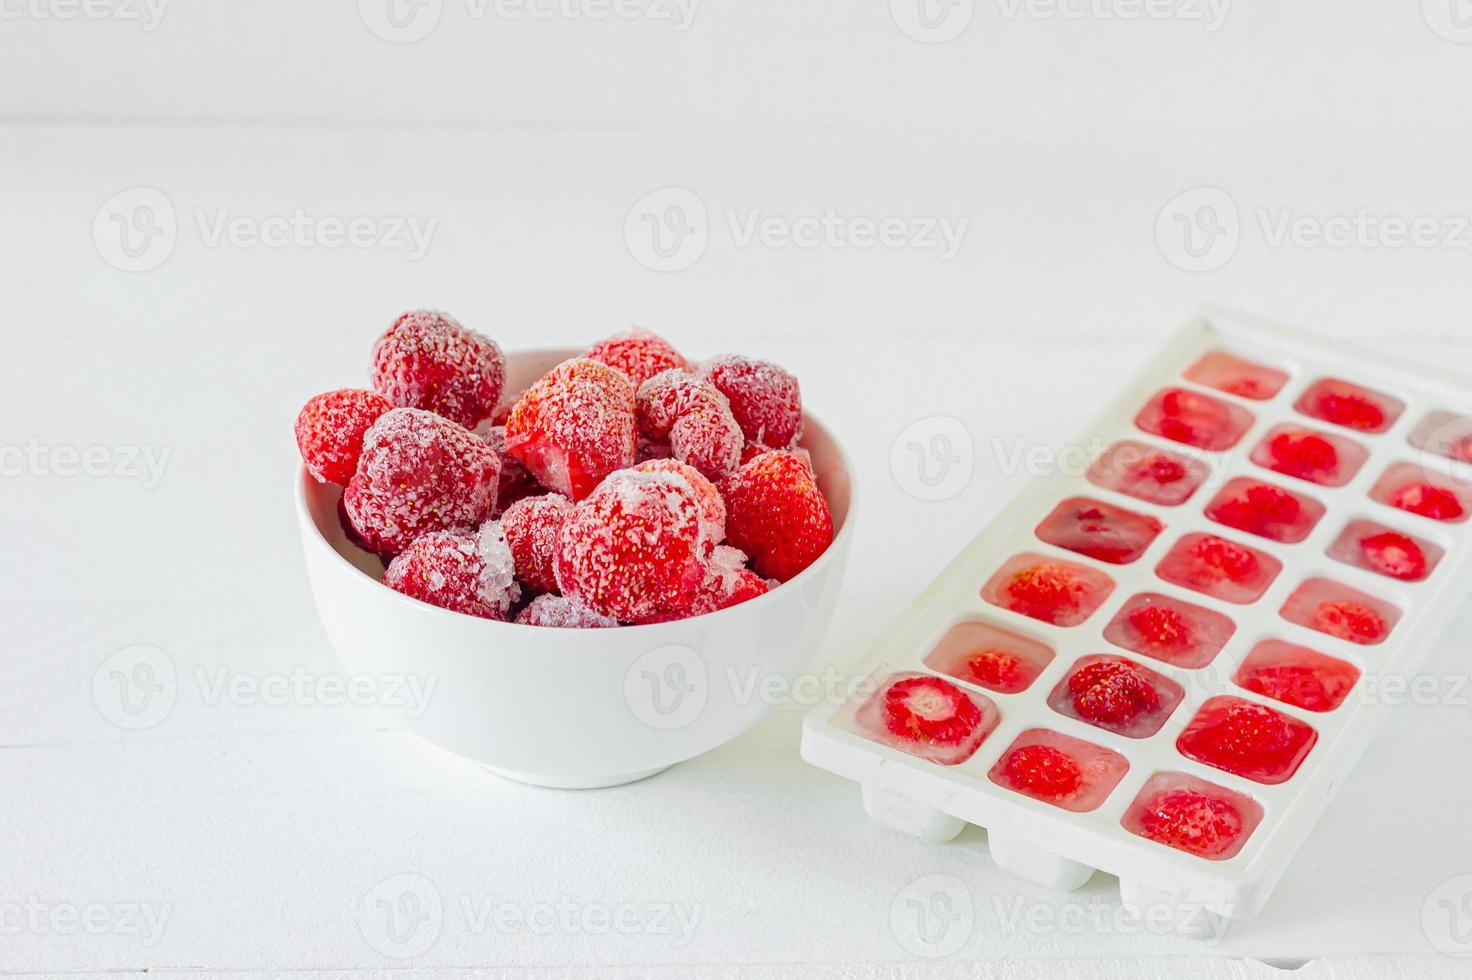 fresas maduras frescas congeladas en cubitos de hielo sobre fondo blanco. alimentación saludable de verano. foto